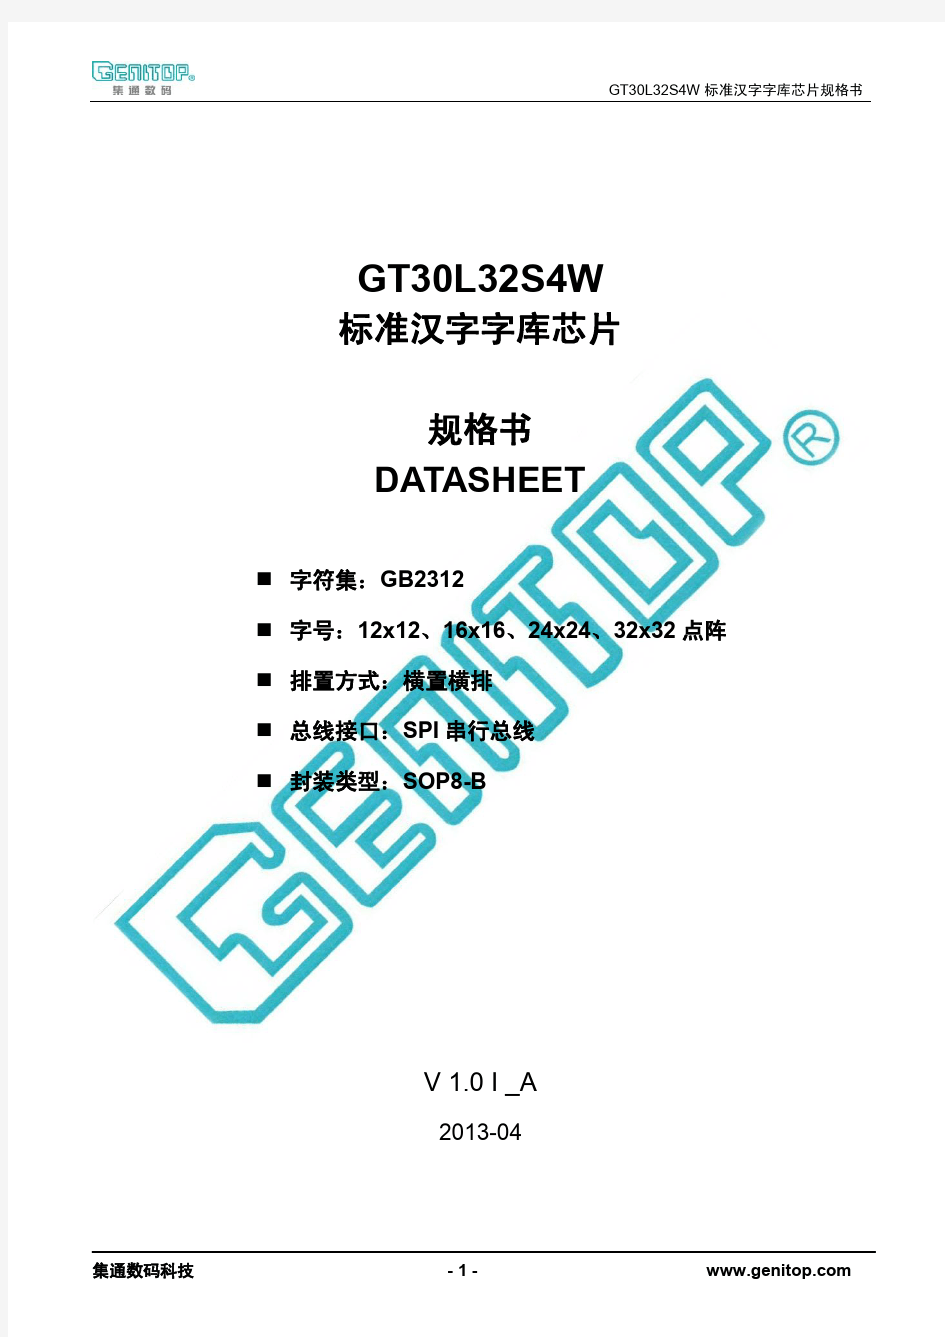 GT30L32S4W规格书V1.1I_A